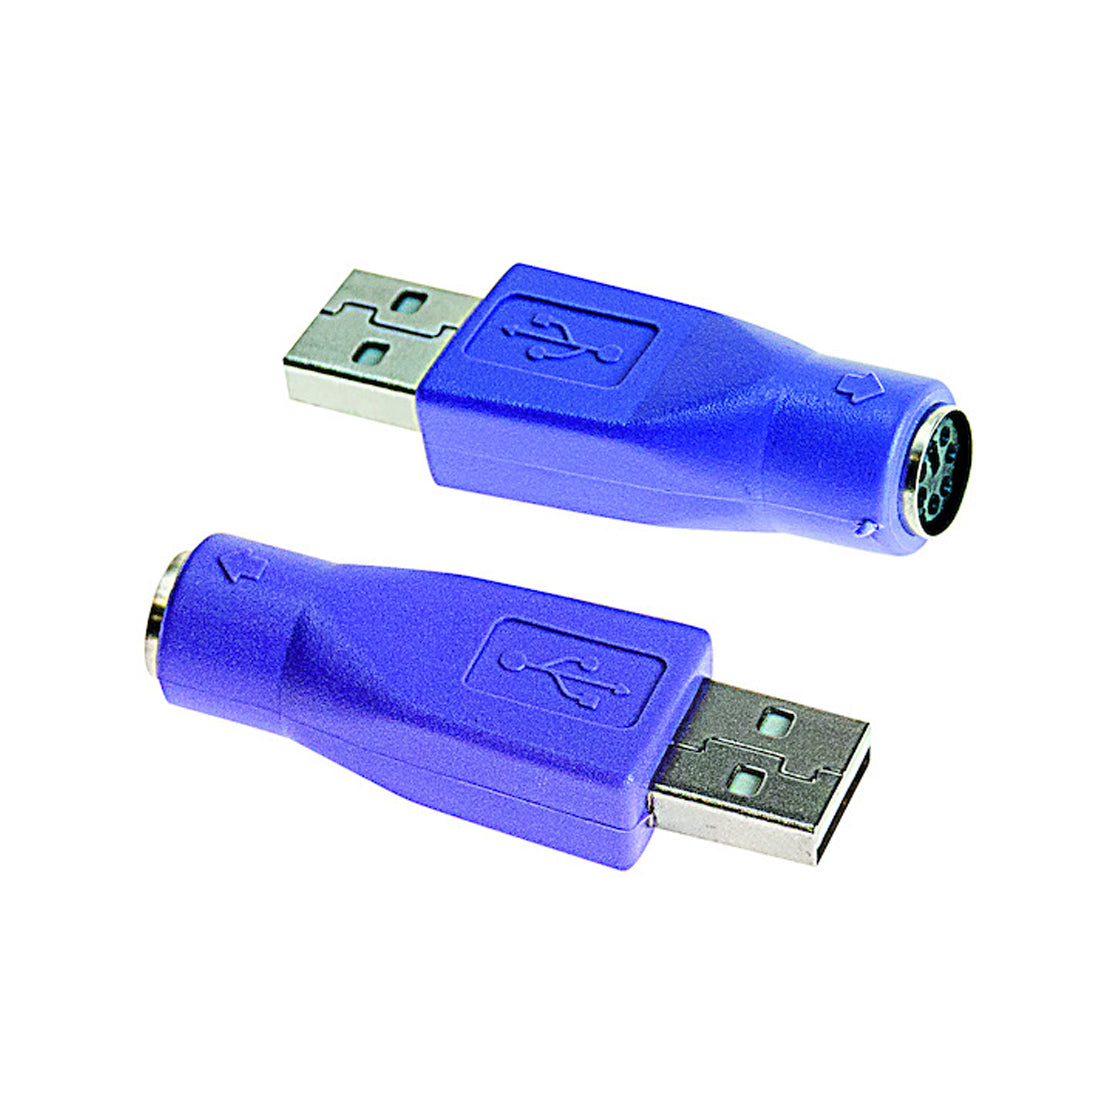 Life adattatore USB per pc presa PS2, spina tipo A, connettore USB per pc